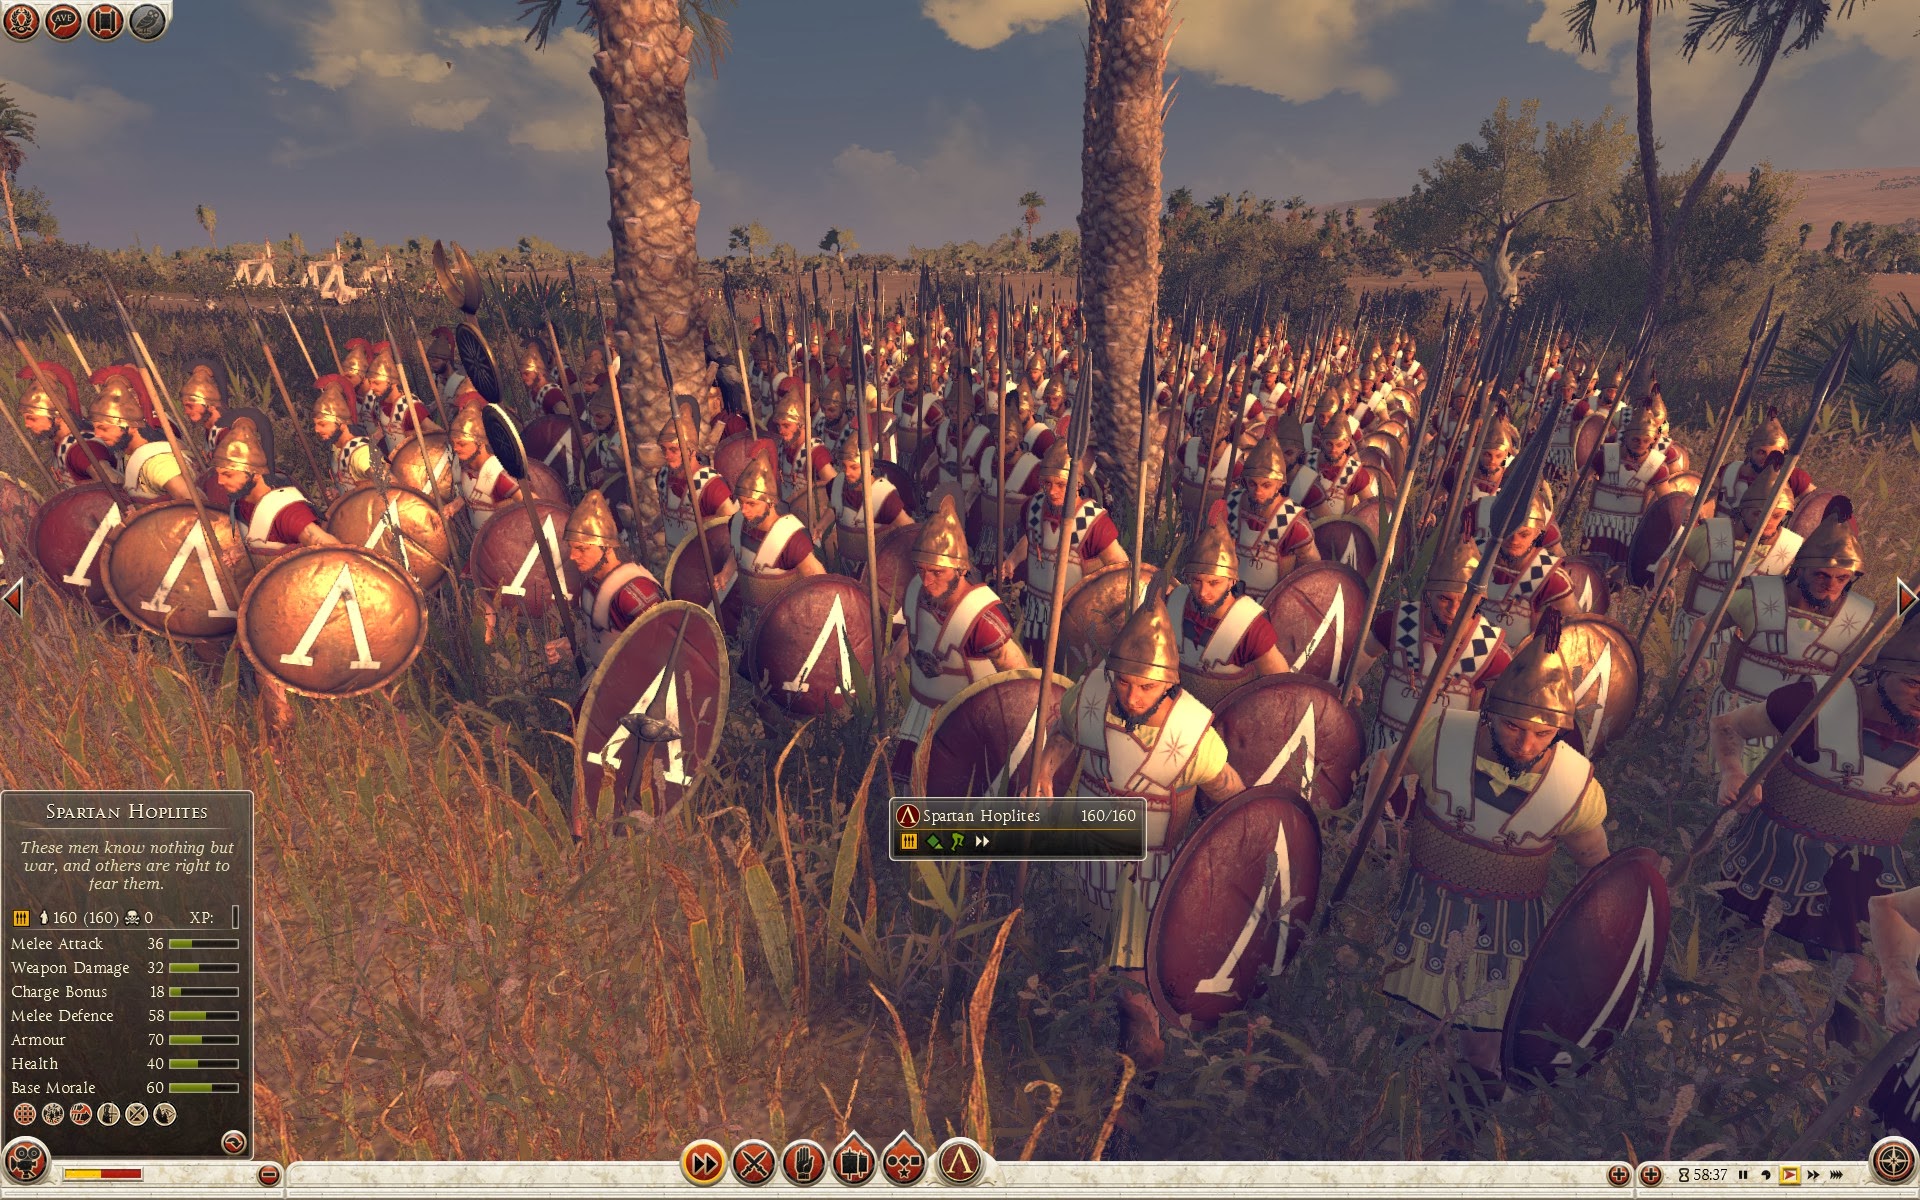 Sparta Hoplitleri